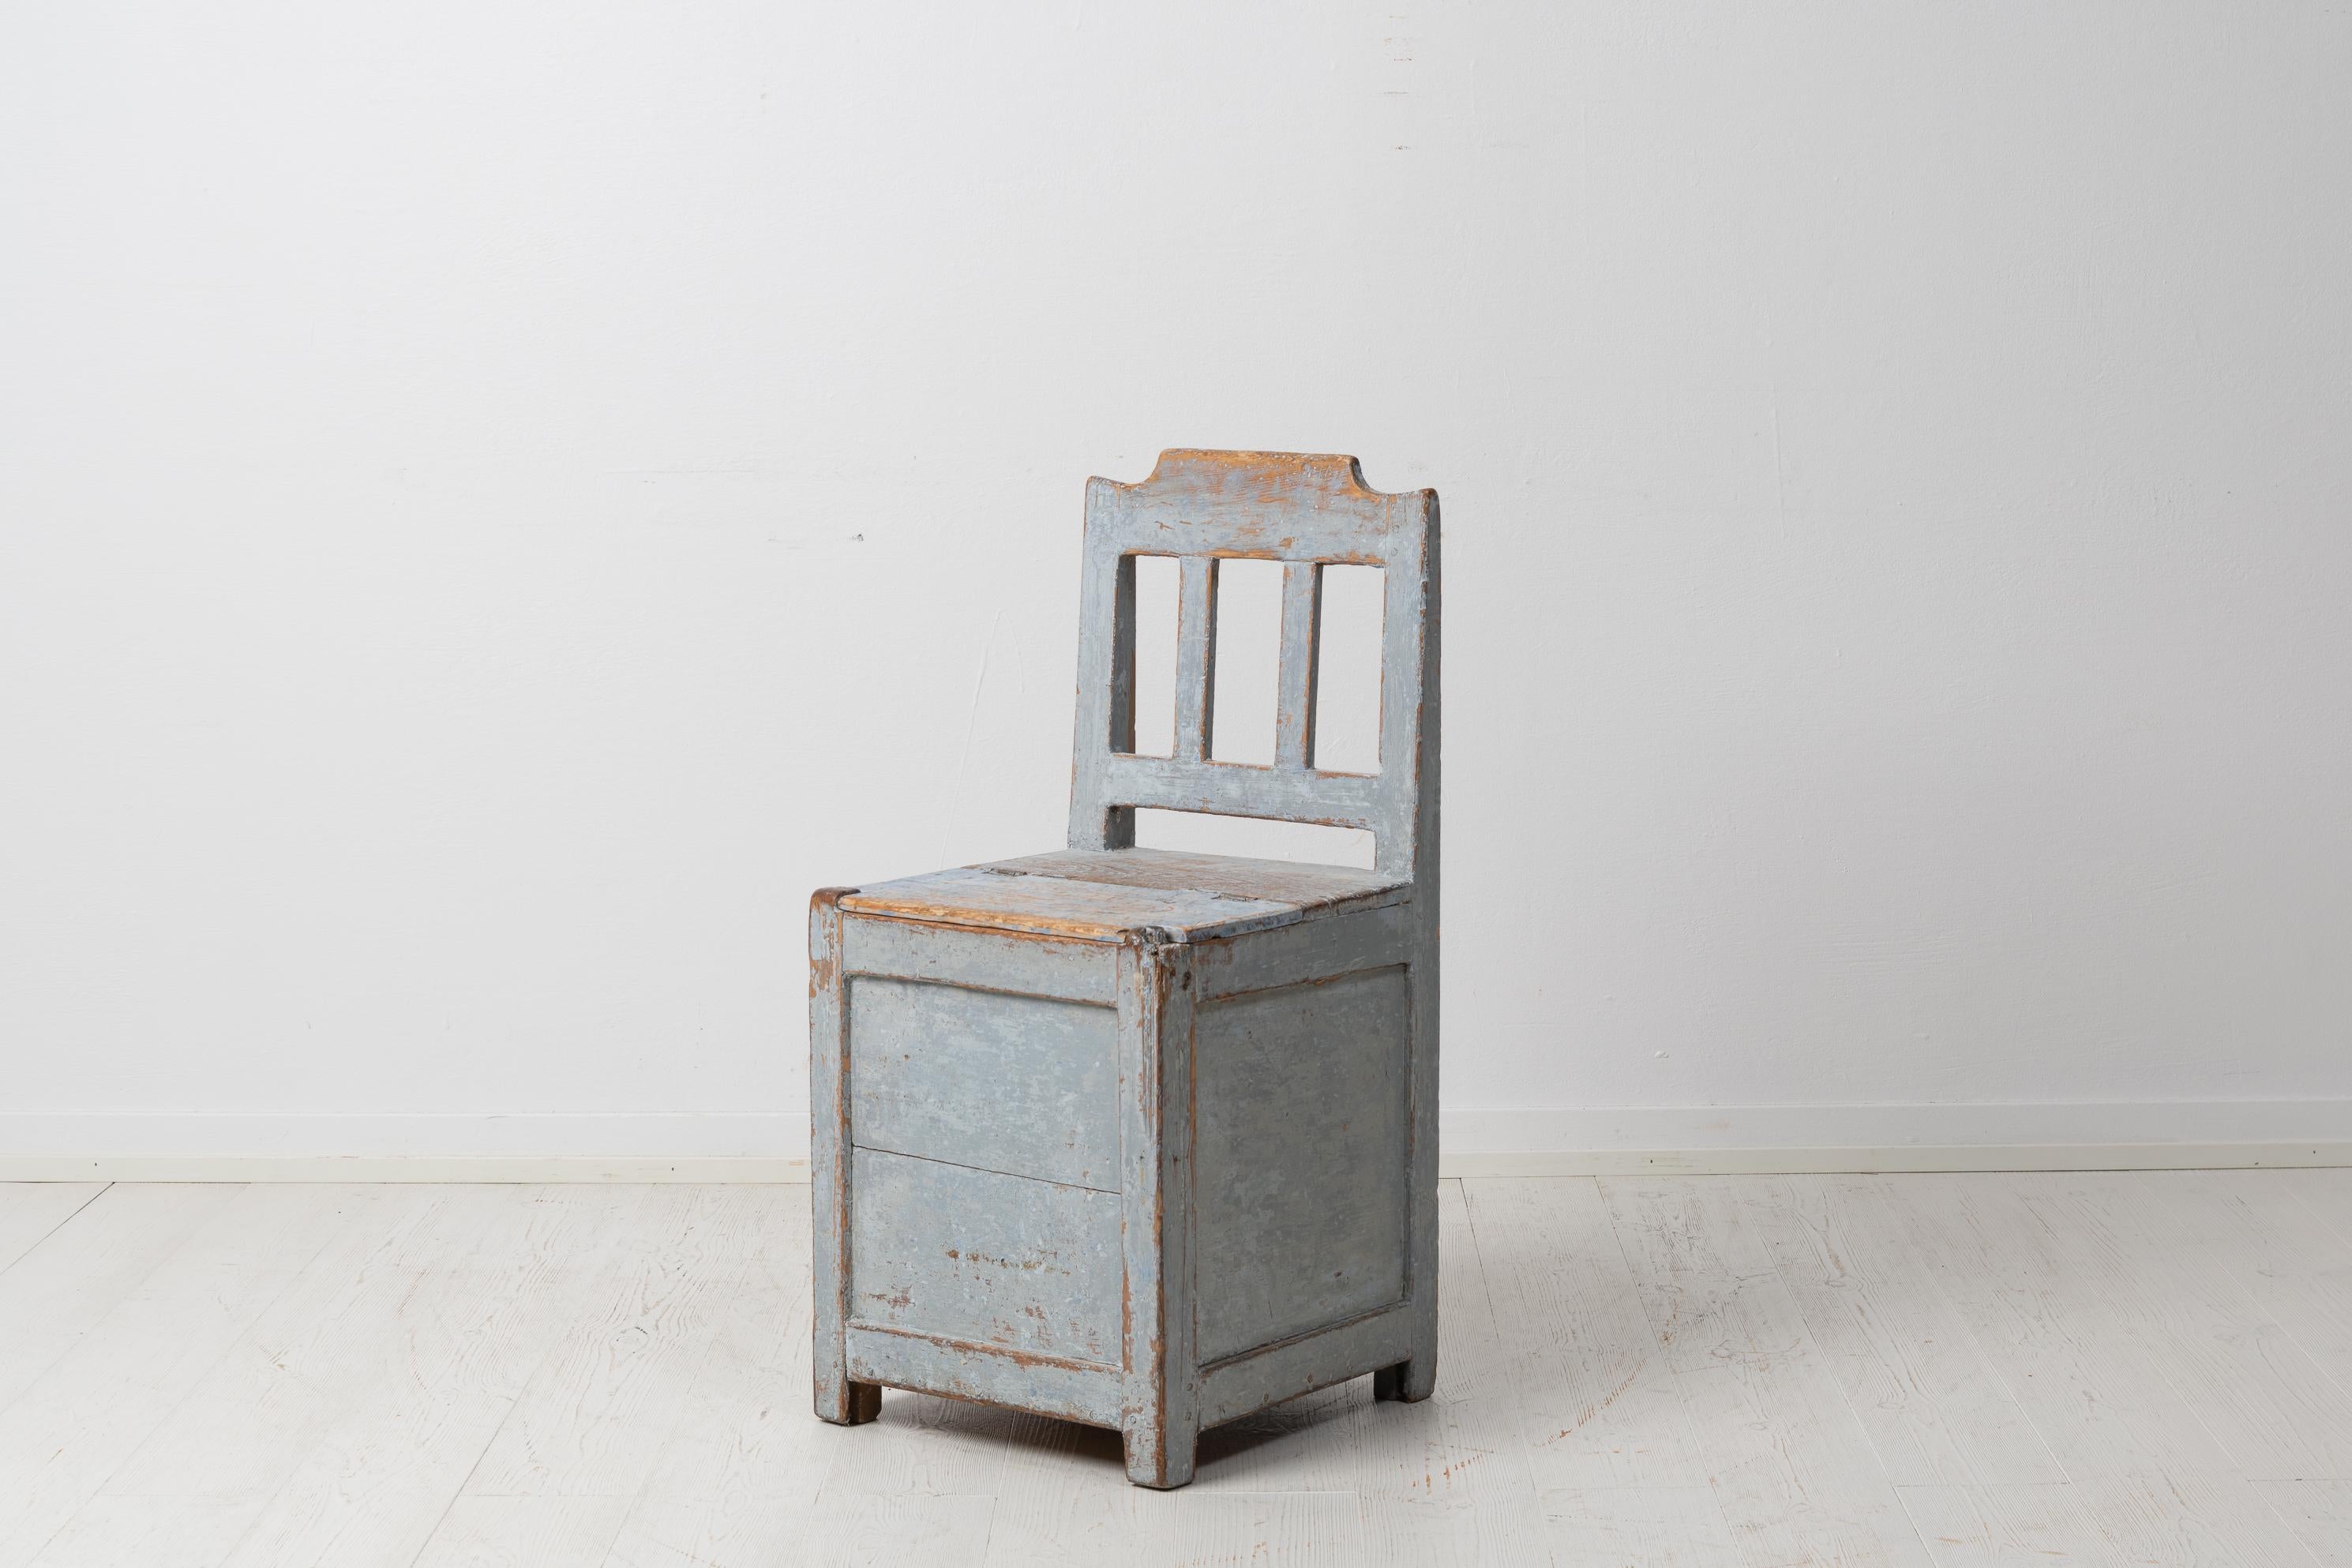 Antiker Volkskunststuhl aus Schweden um 1860 aus bemalter Kiefer. Der Stuhl hat die ursprüngliche Farbe mit einer zeitbedingten Patina. Der Stuhl hatte in Nordschweden eine ganz besondere Funktion. In den kalten Wintern lagerten die Menschen Stroh